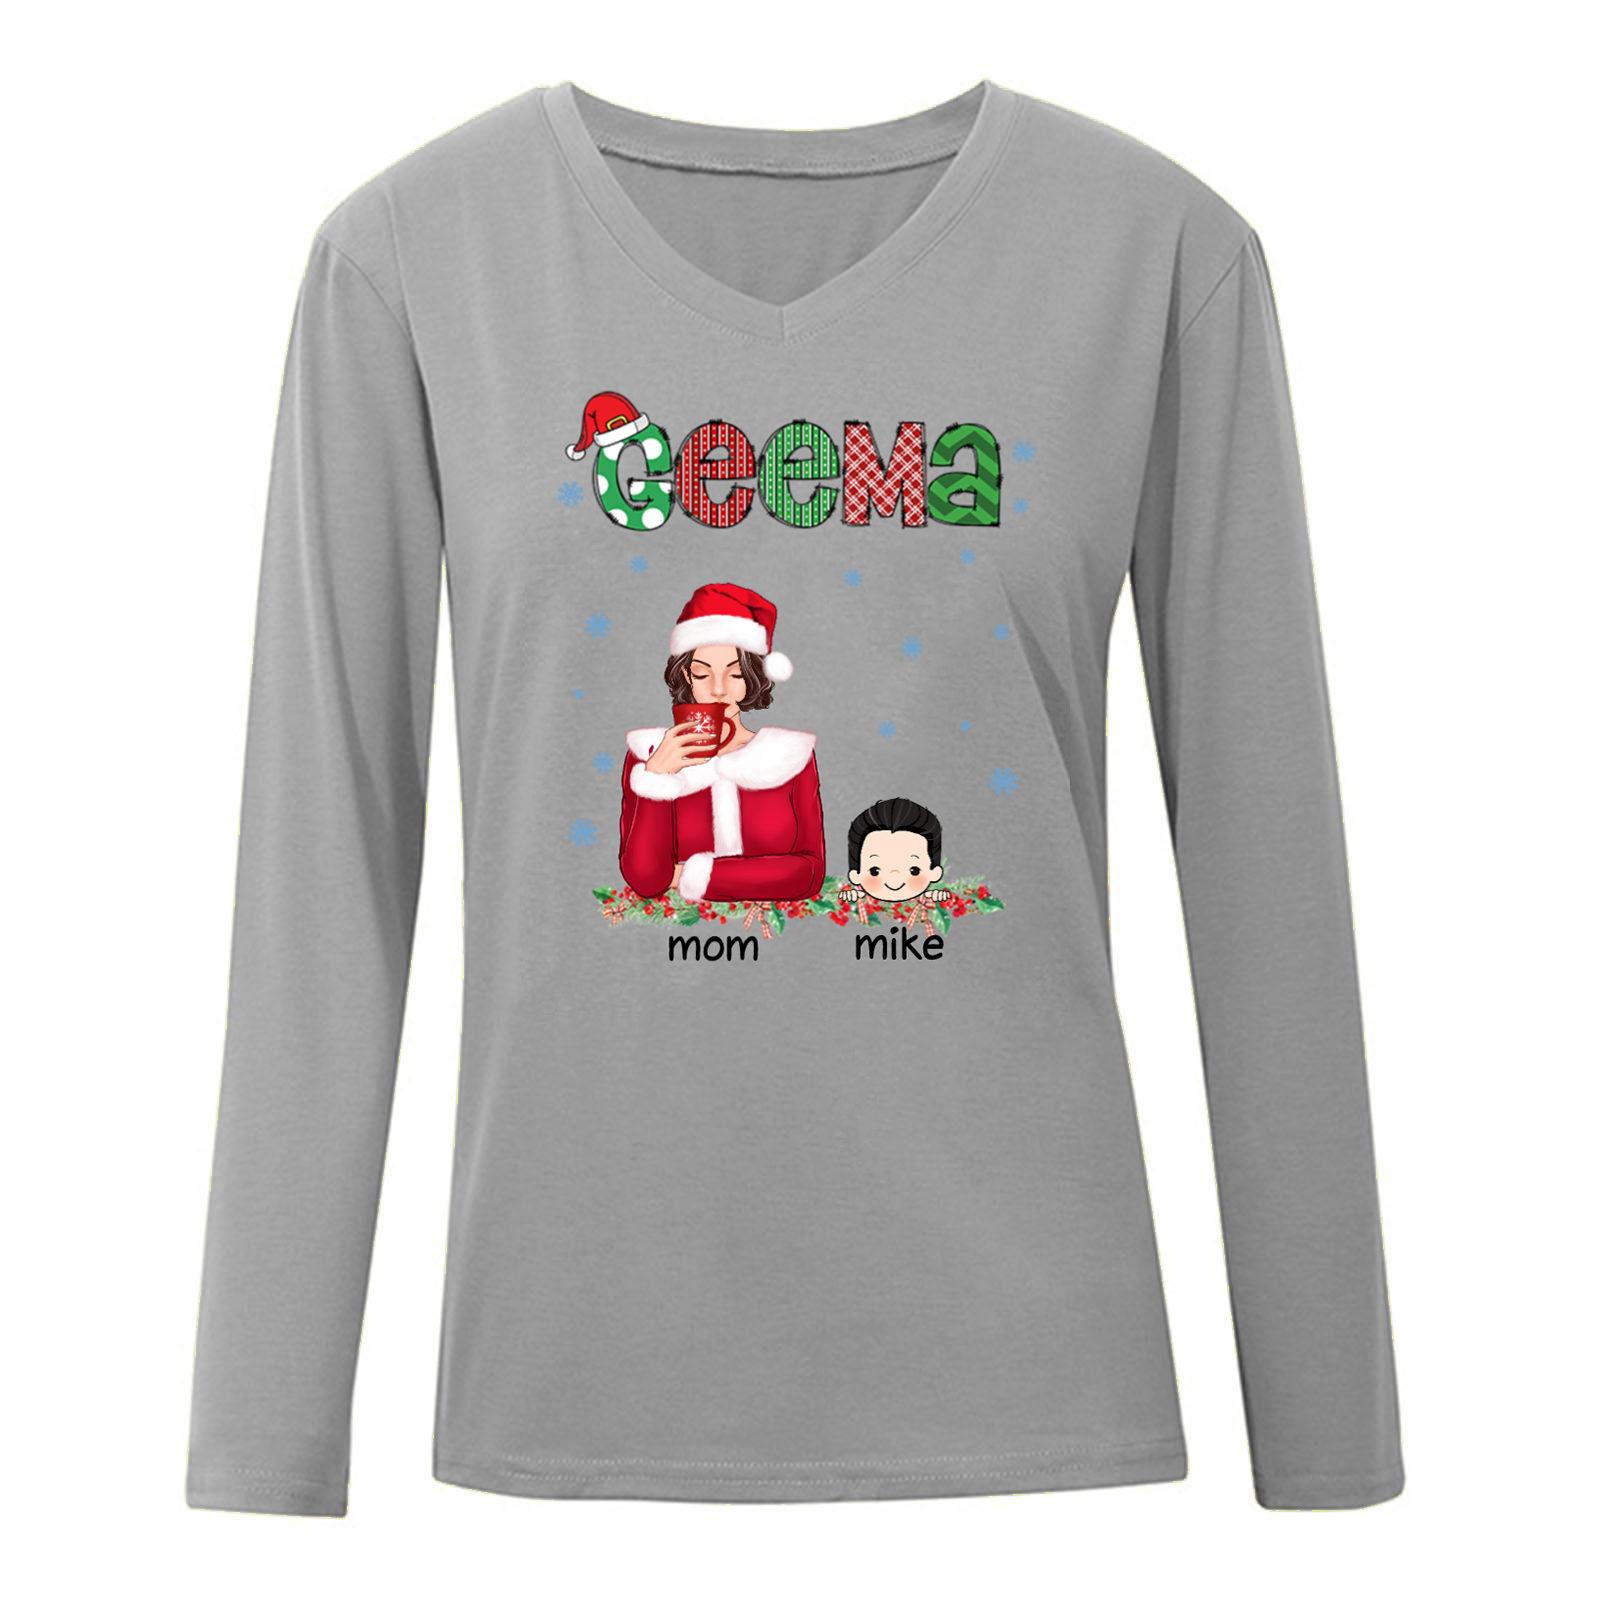 Beautiful Grandma And Grandkids Christmas Personalized Long Sleeve Shirt